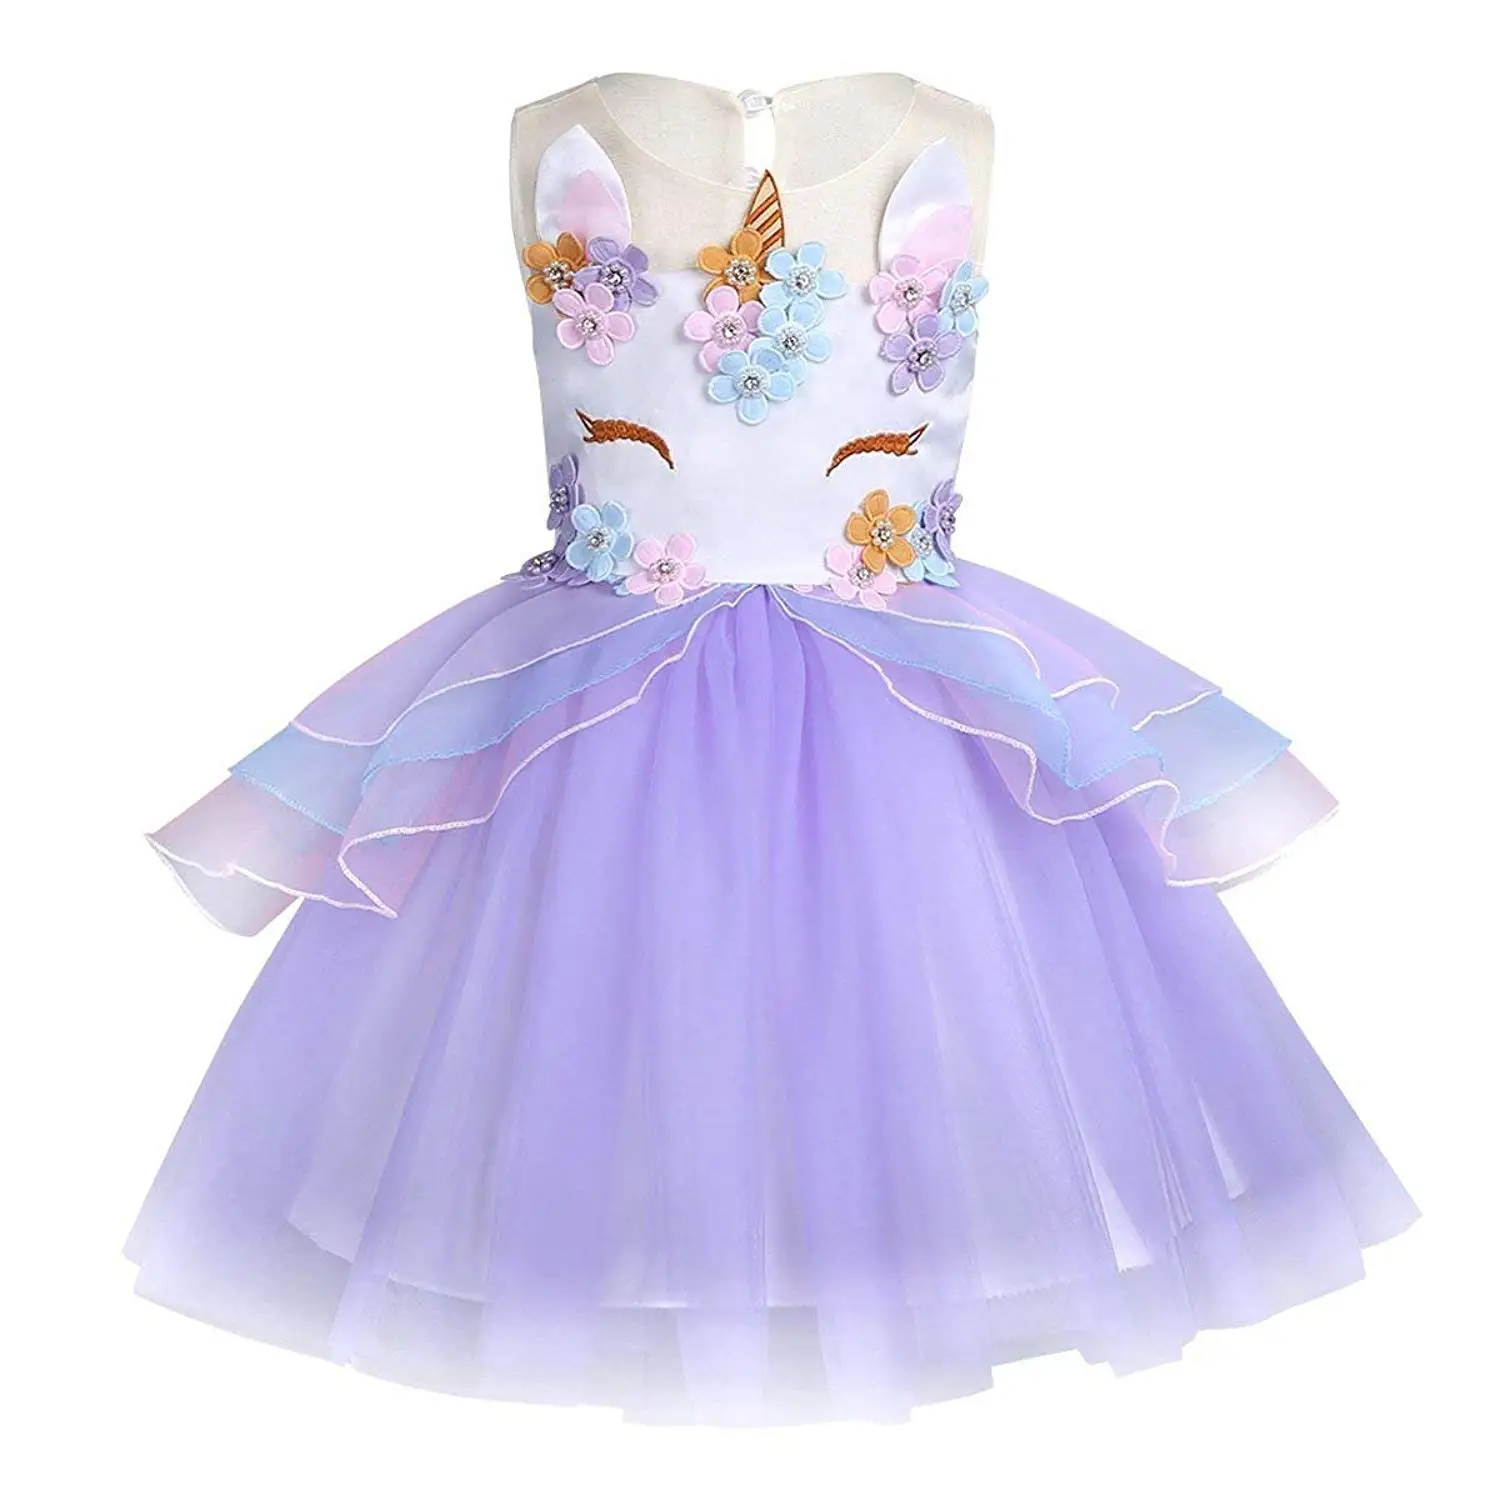 Cheap Kids Princess Ball Gowns, find Kids Princess Ball Gowns deals on ...